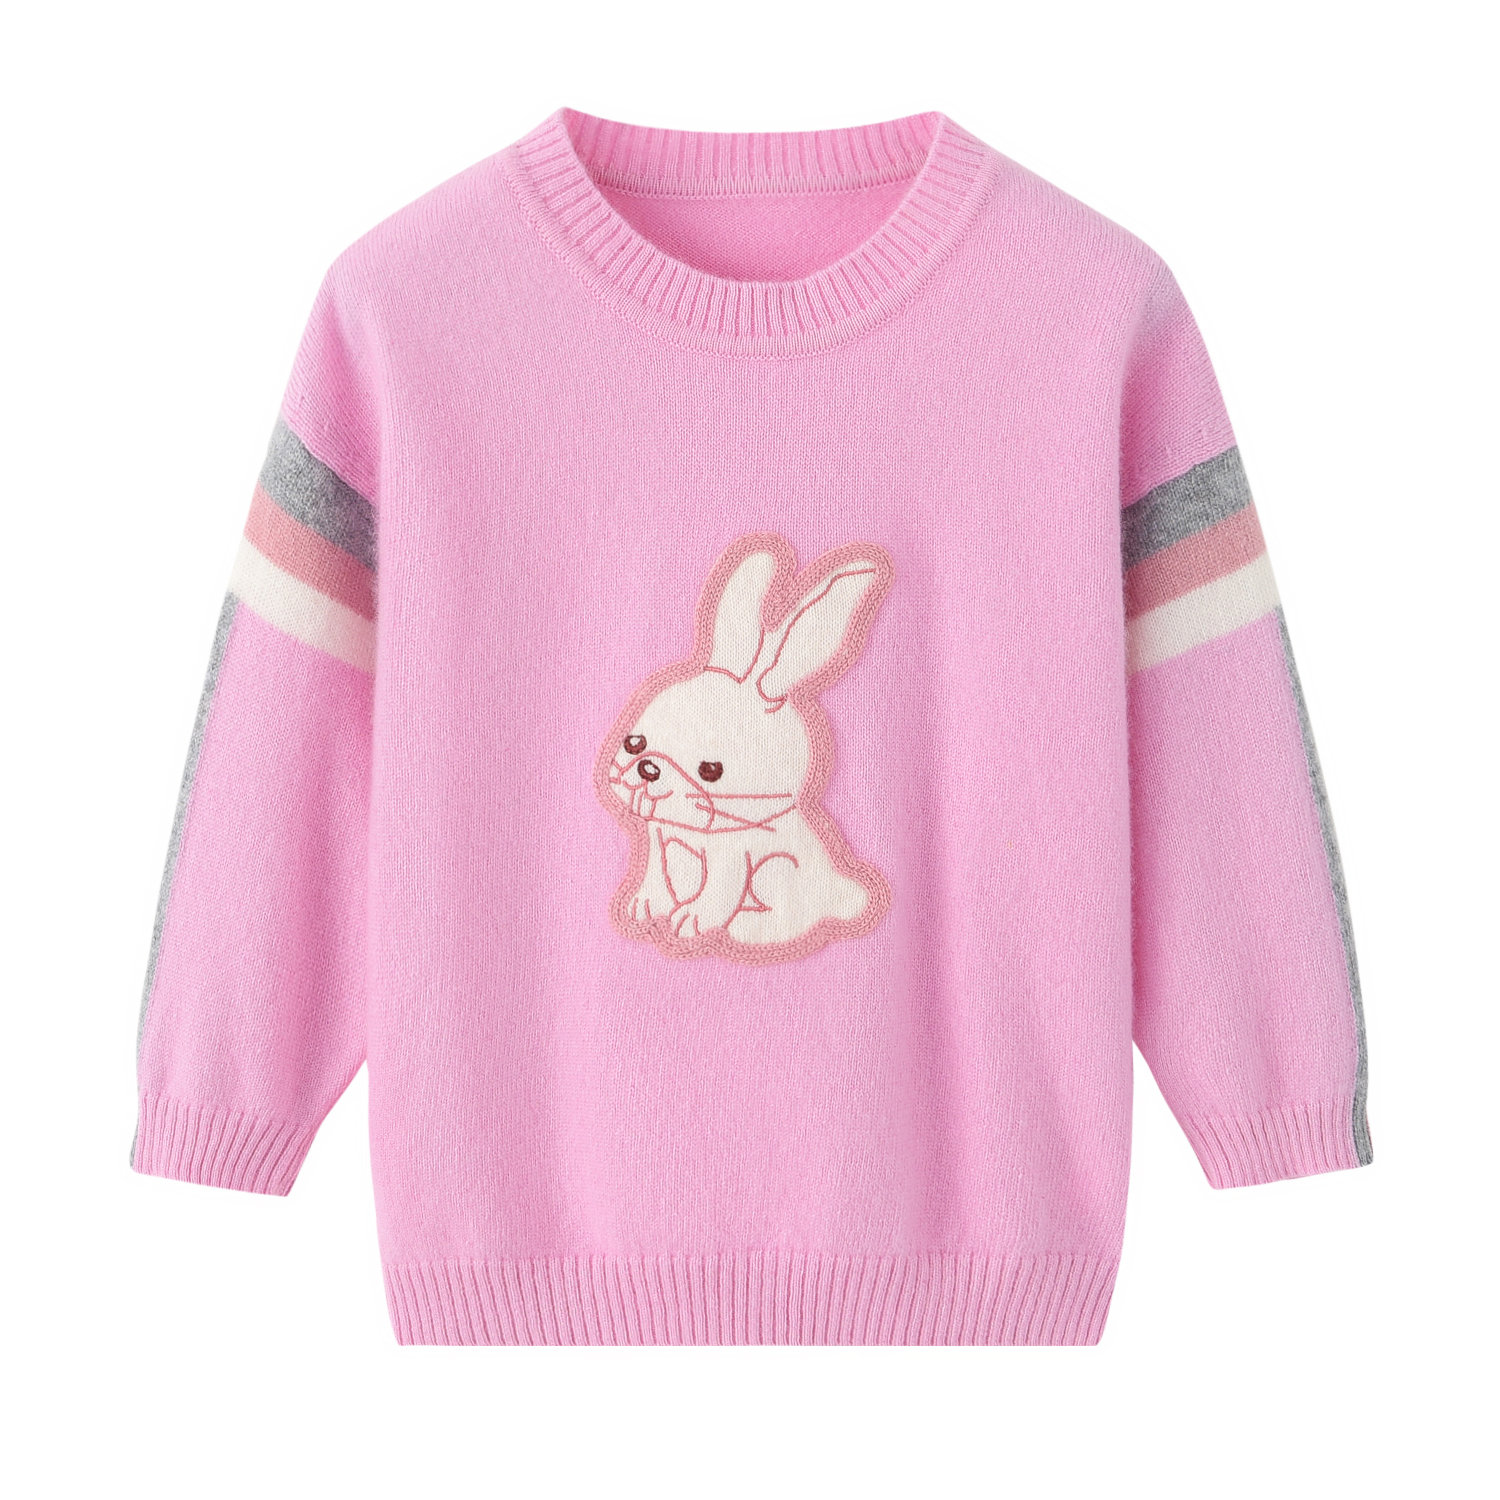 鄂尔多斯市产纯山羊绒女童羊绒衫图案宝宝粉色圆领可爱外套卡通